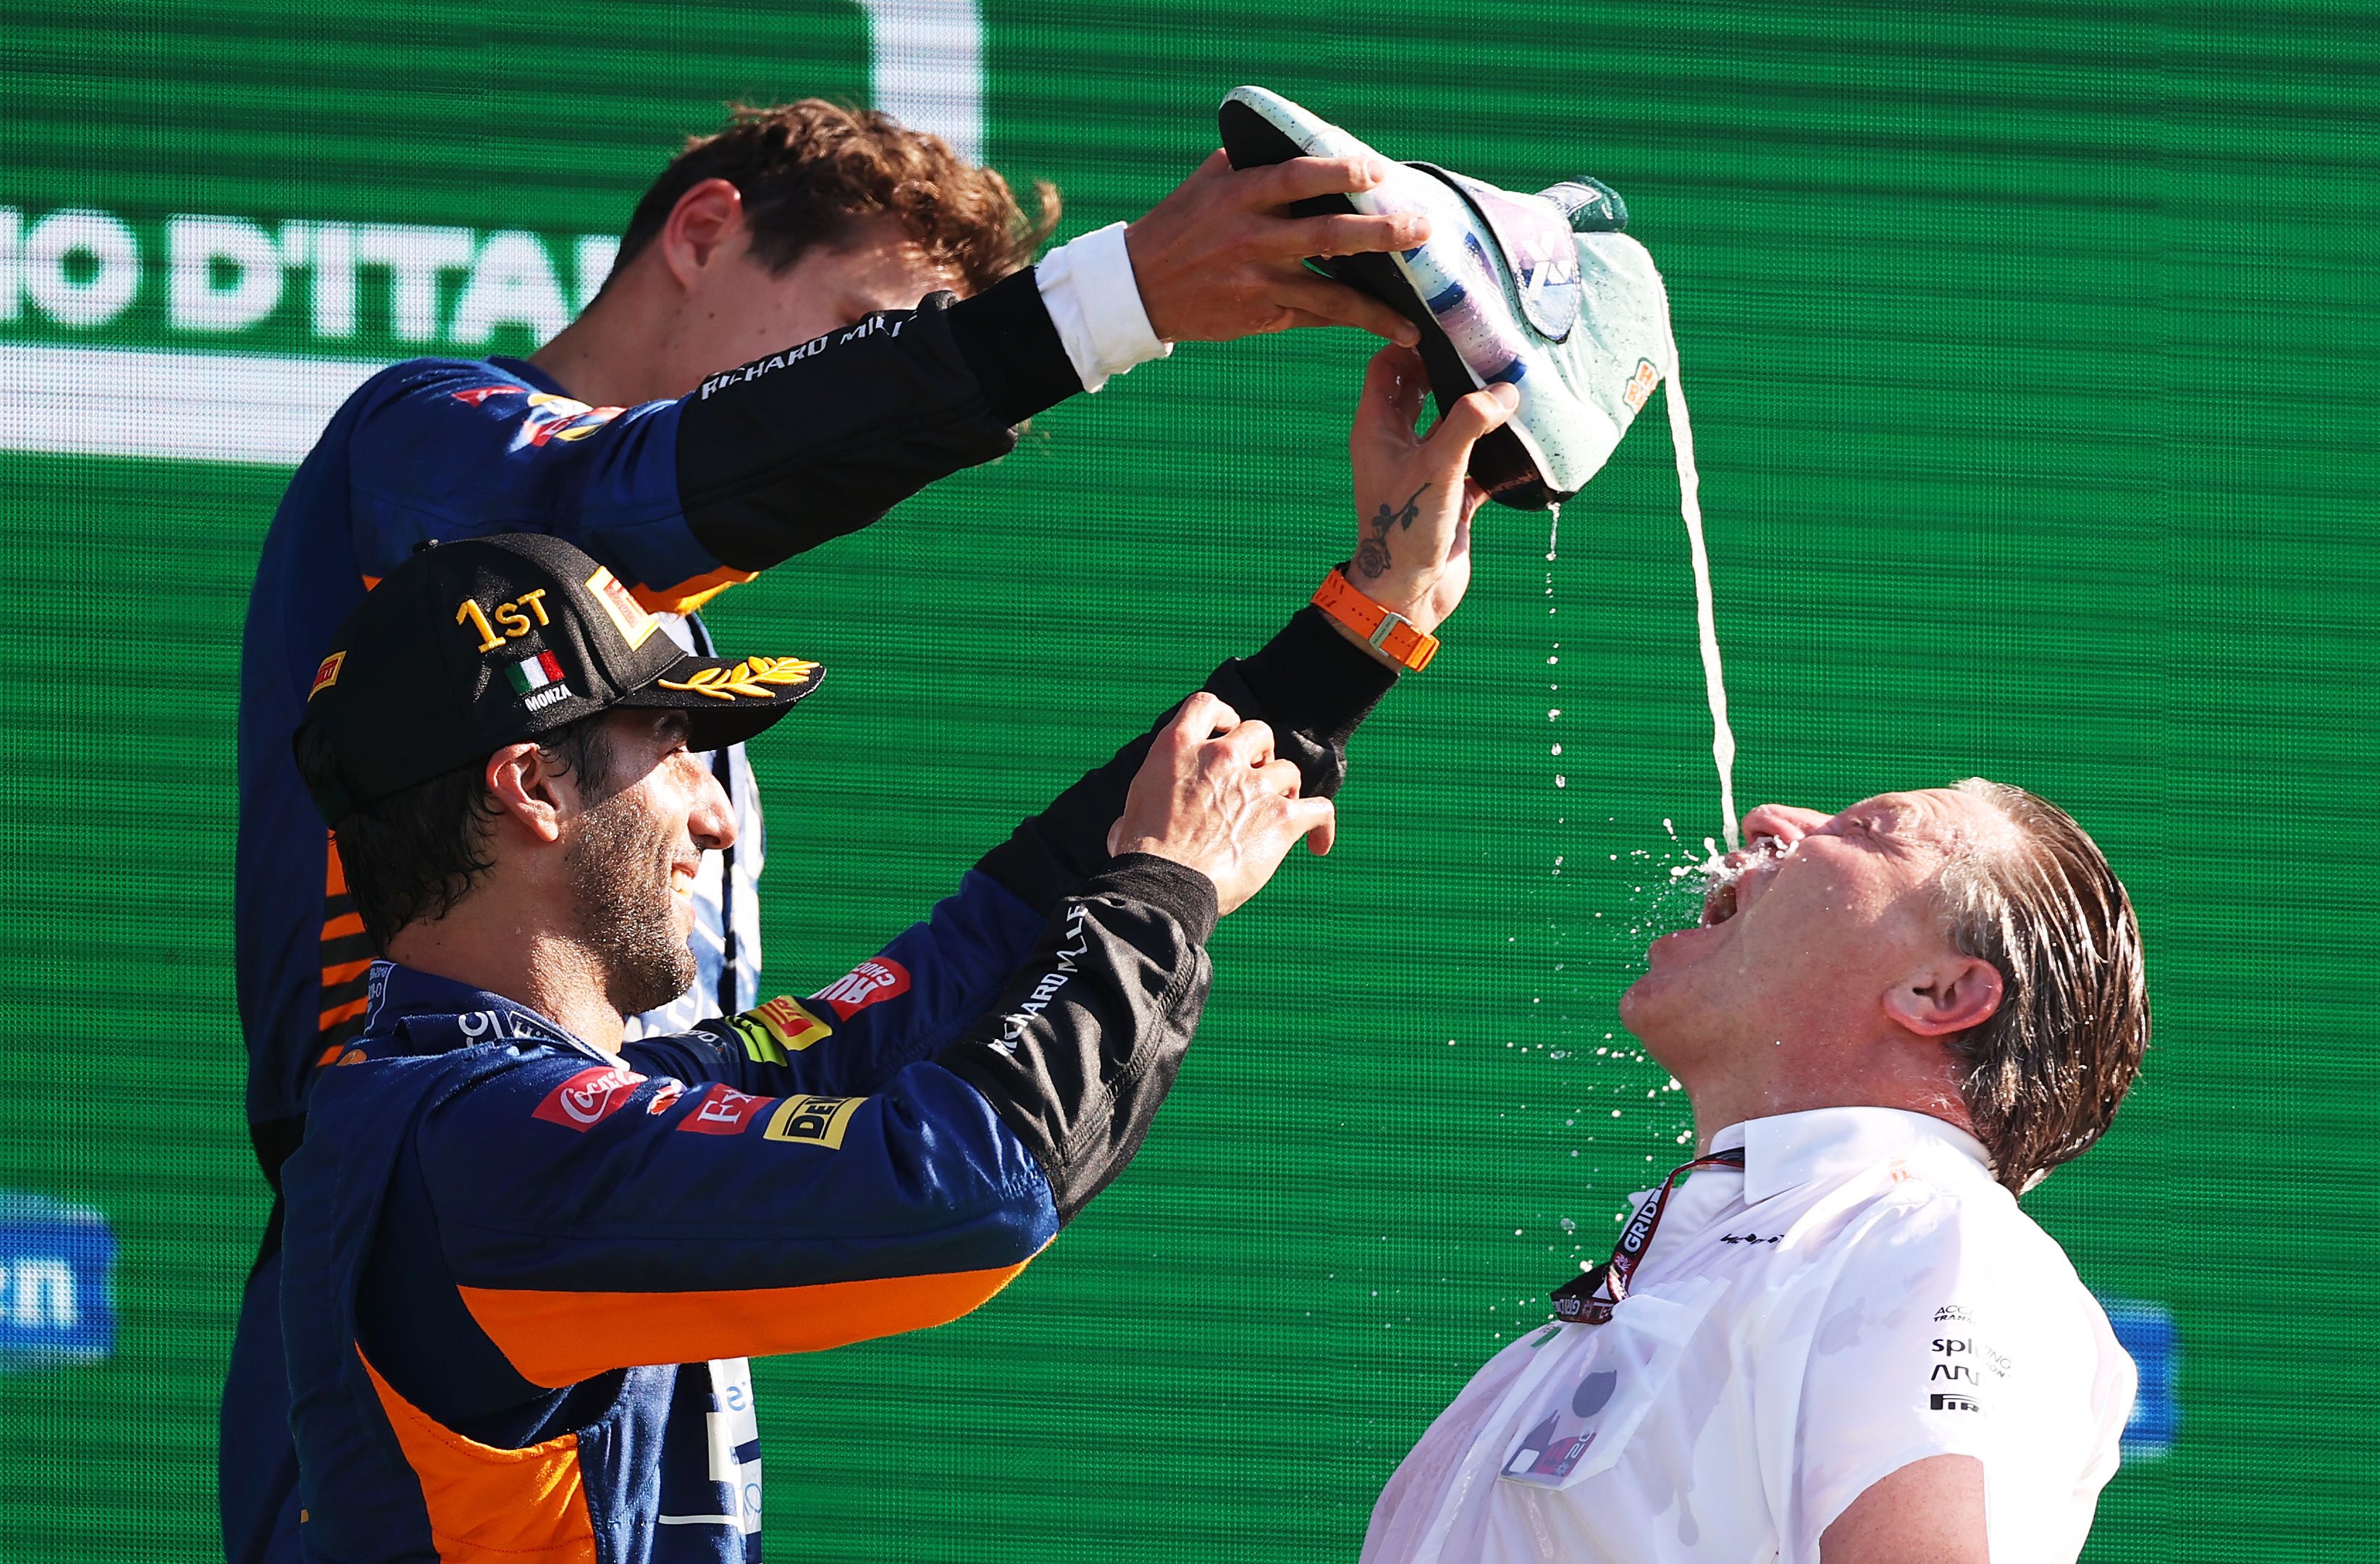 Ricciardo win 'definitely my proudest day'